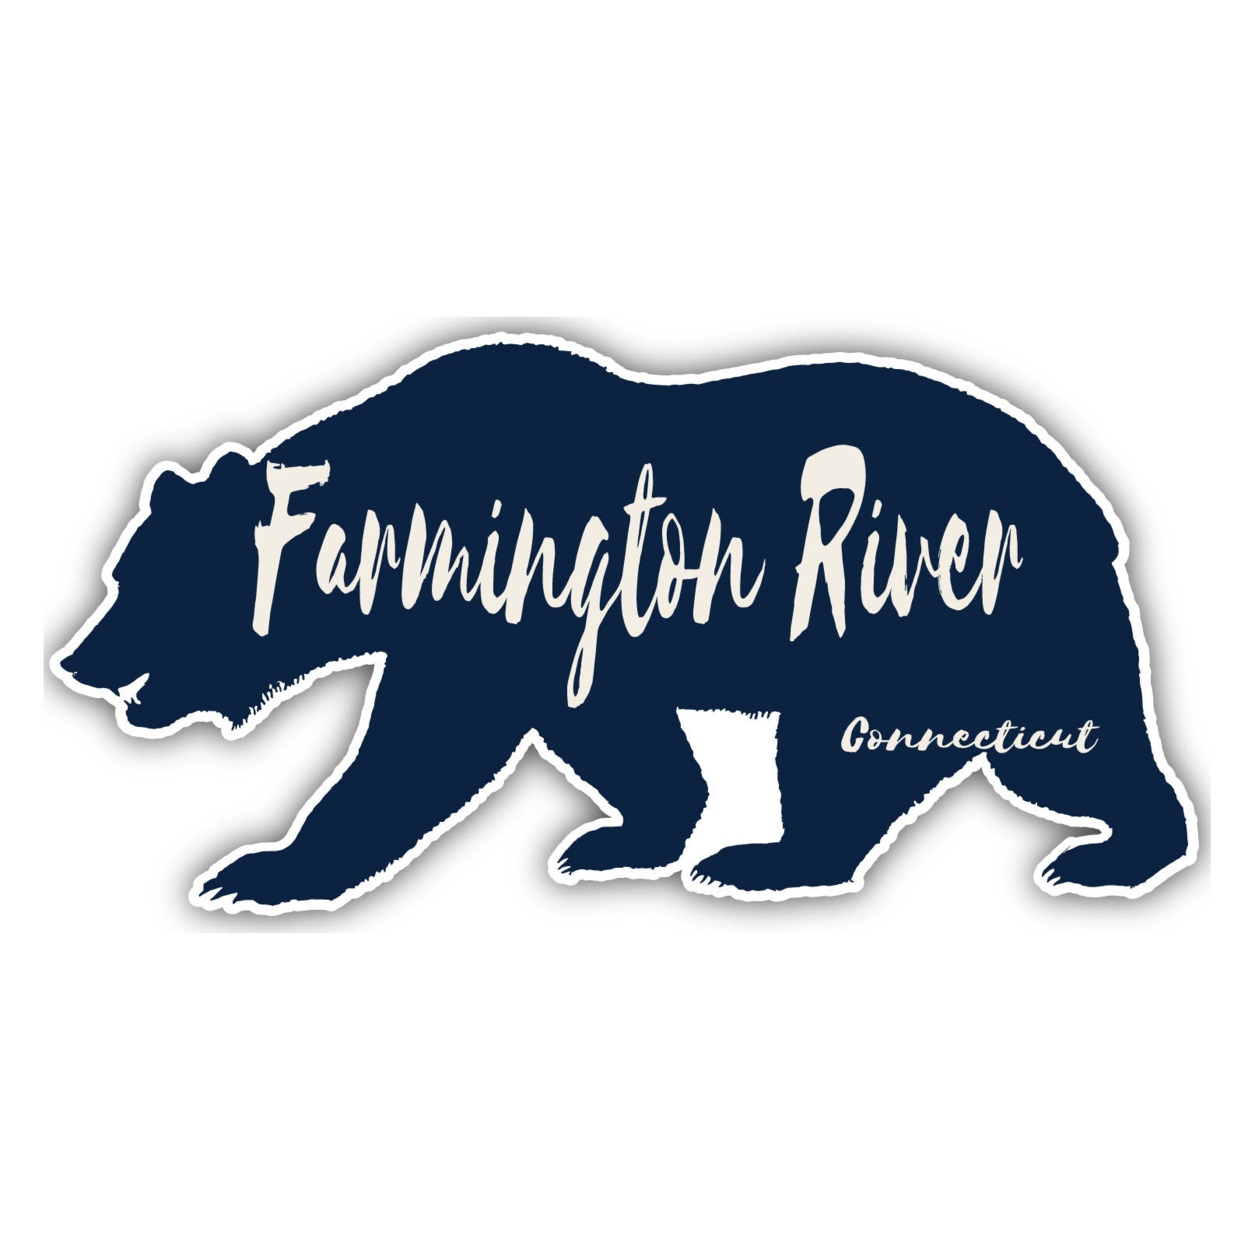 Farmington River Connecticut Souvenir Decorative Stickers (Choose Theme And Size) - Single Unit, 8-Inch, Bear